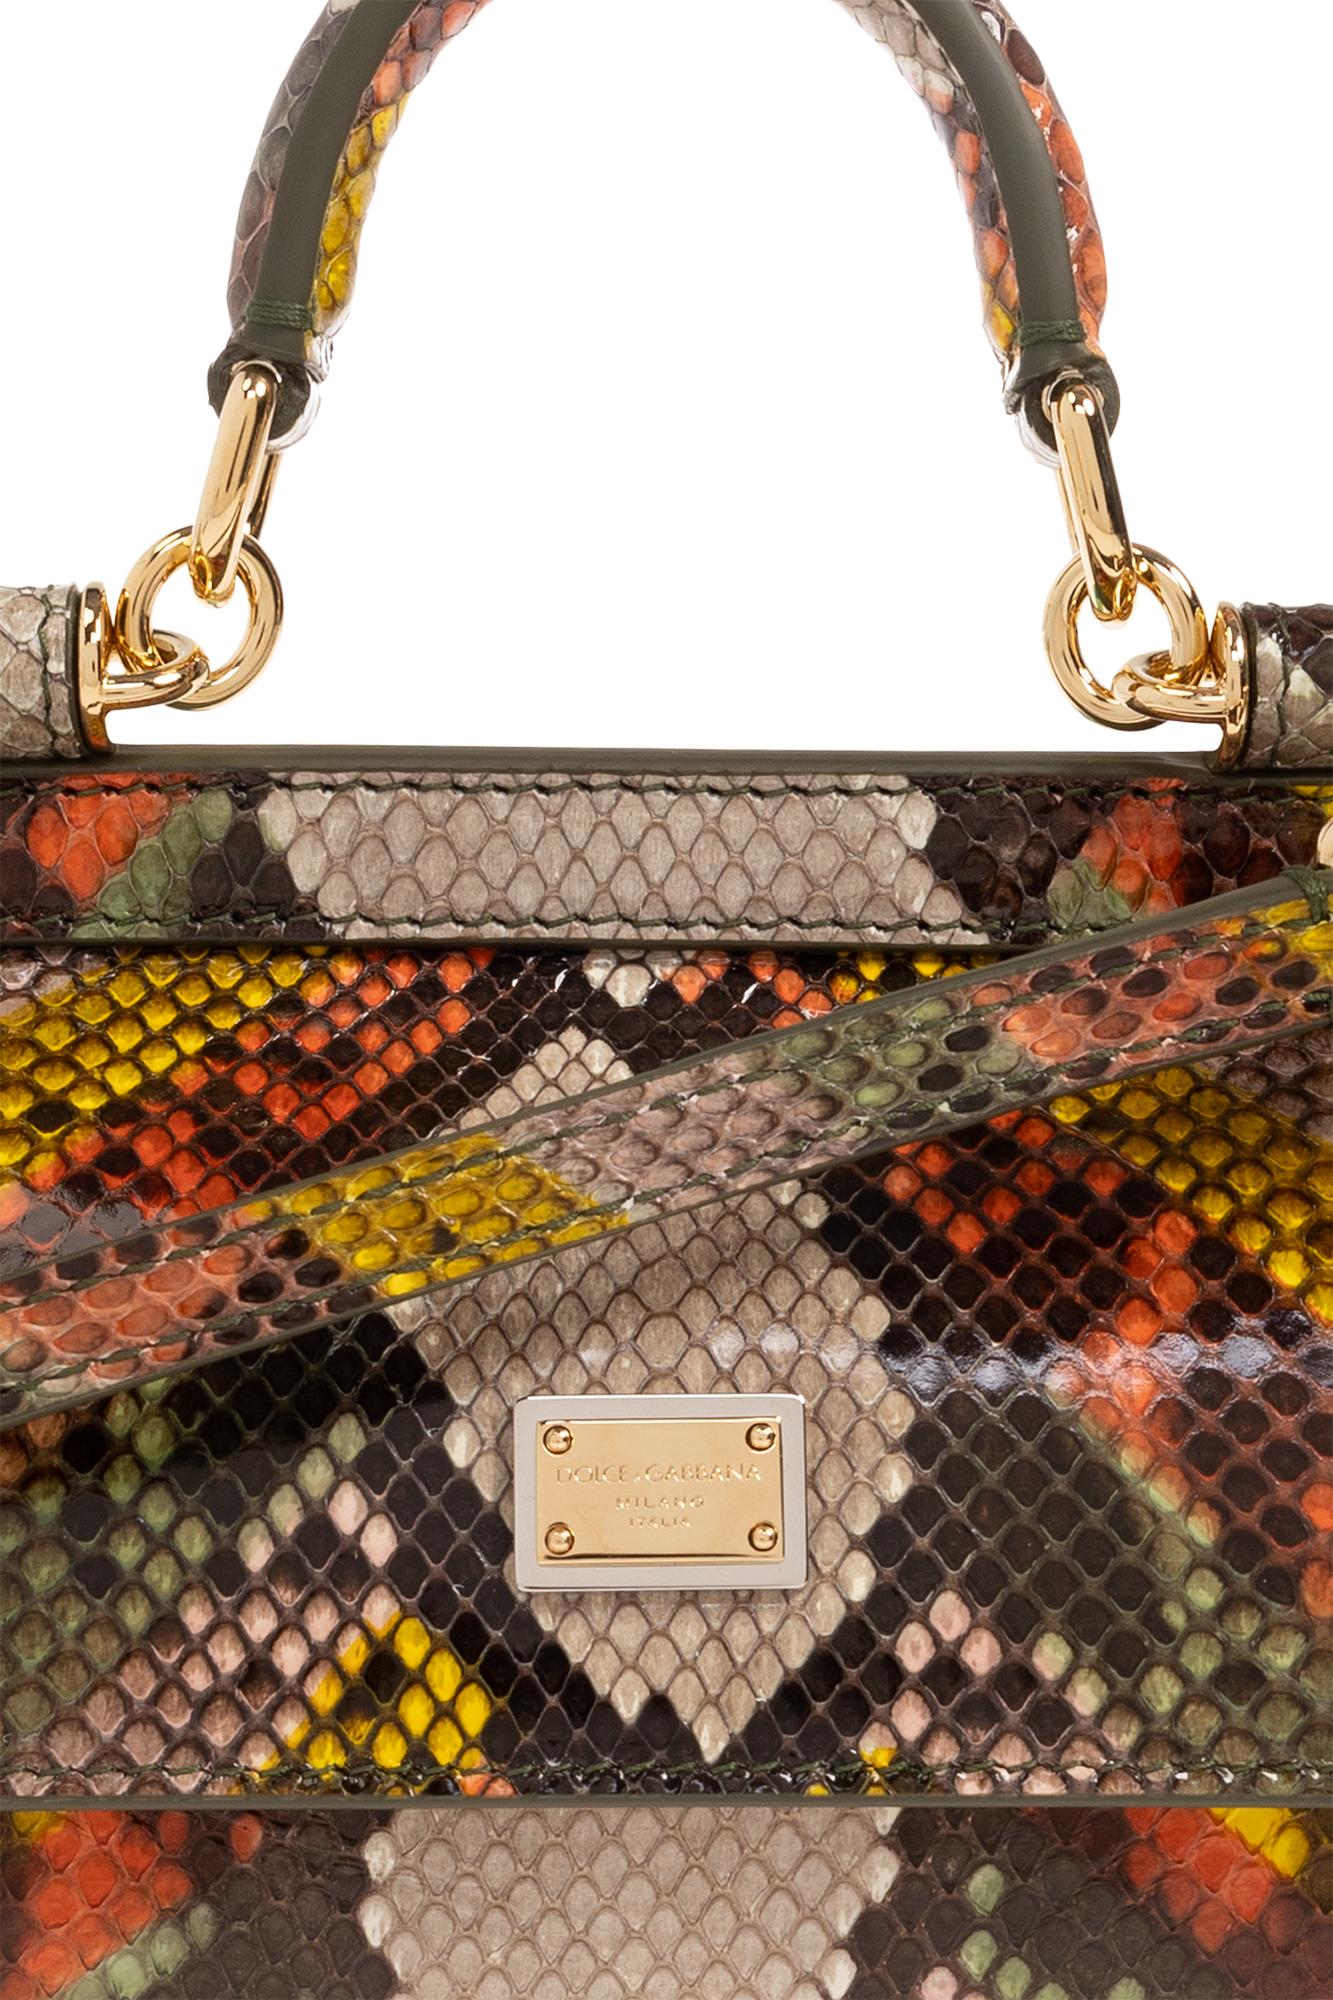 Dolce & Gabbana ‘Sicily Small’ shoulder bag